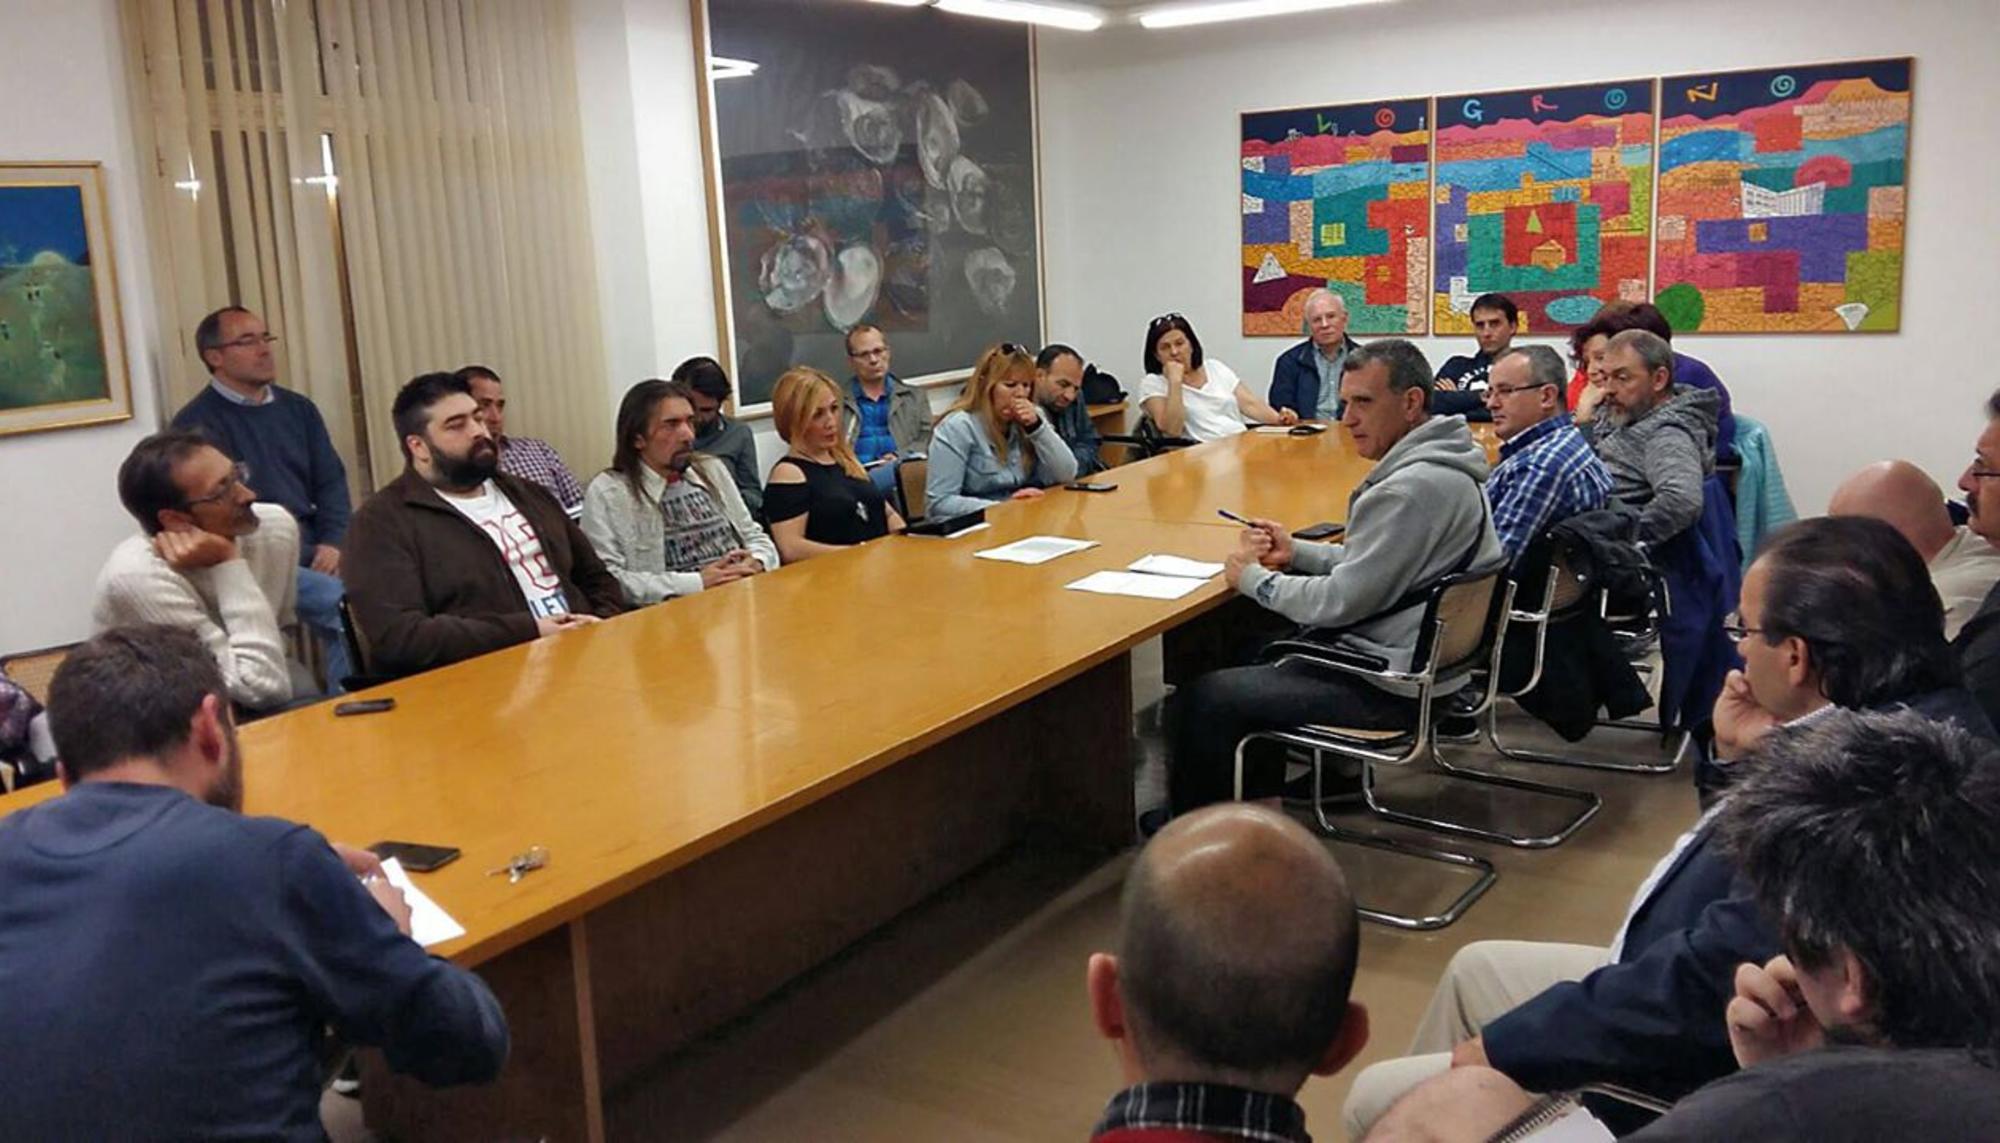 Reunión de asociaciones y colectivos por la reivindicación del espacio público en Logroño